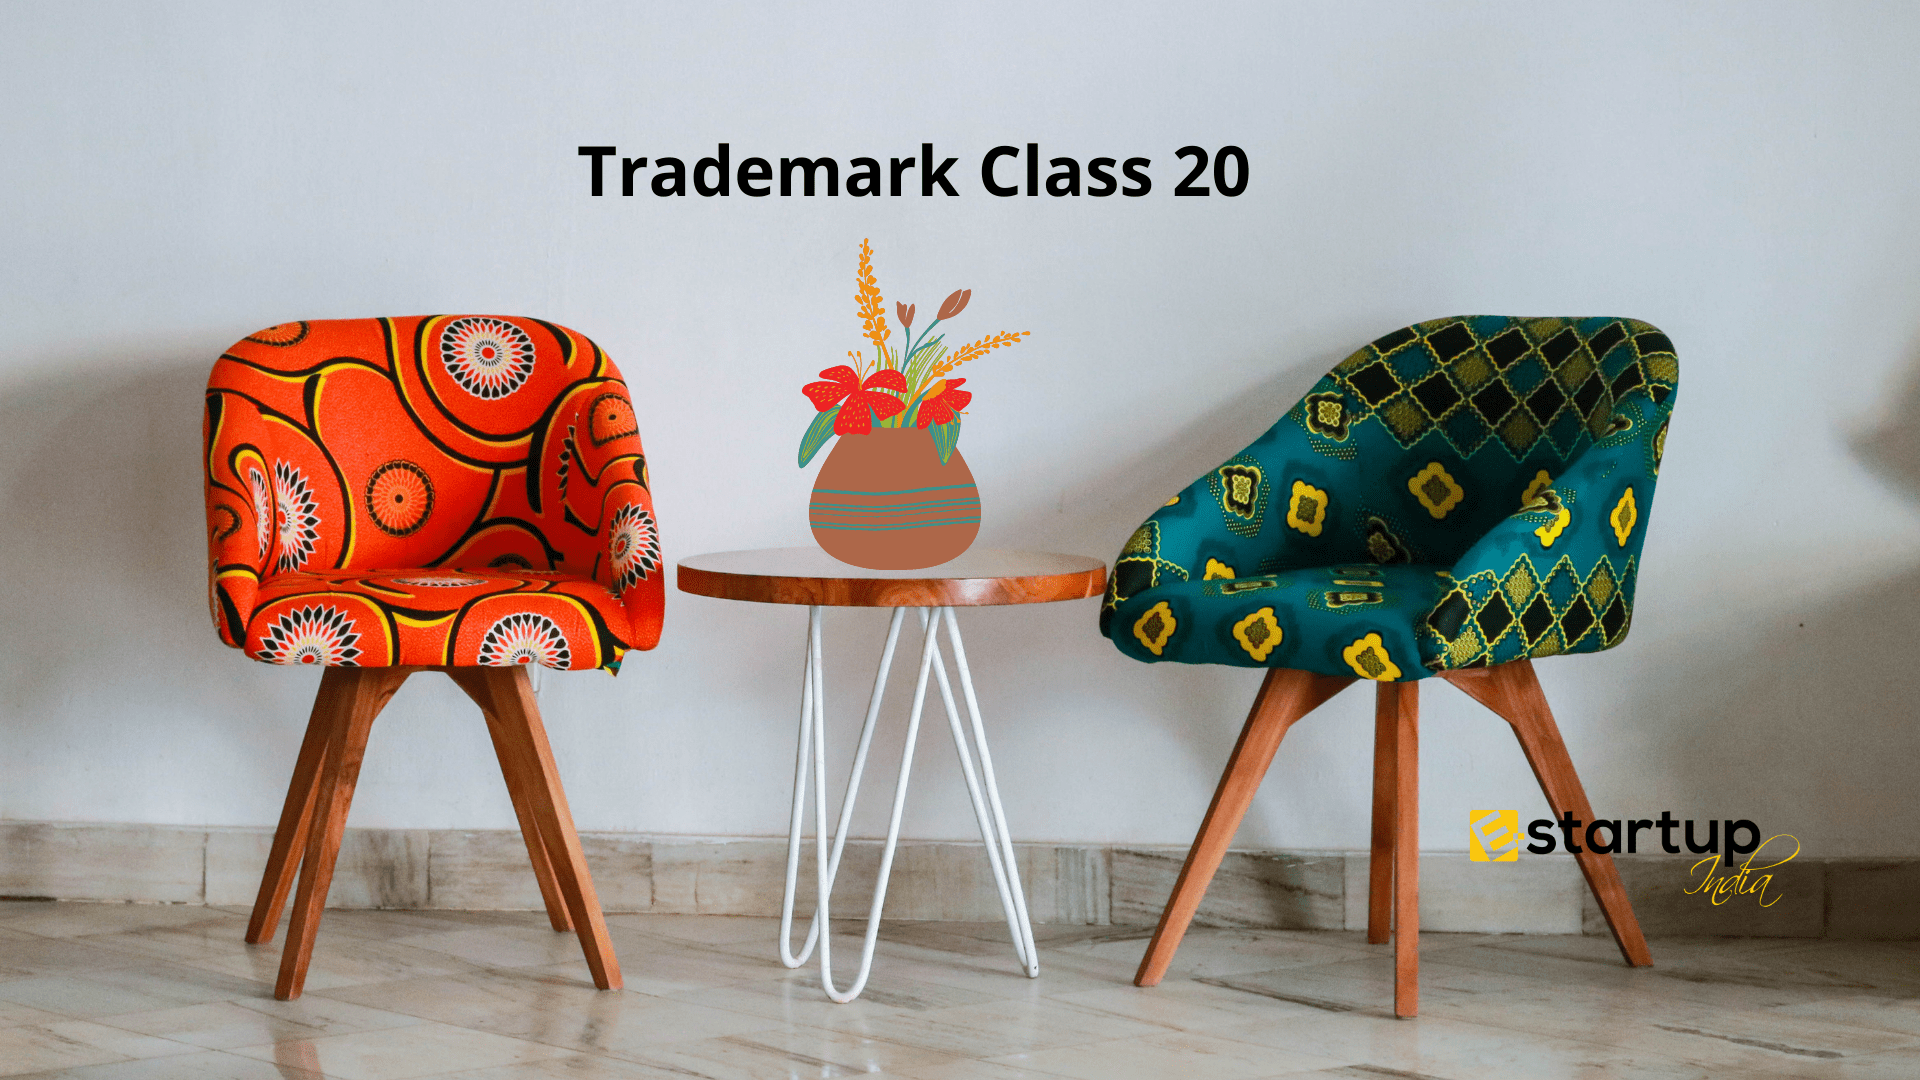 Trademark Class 20